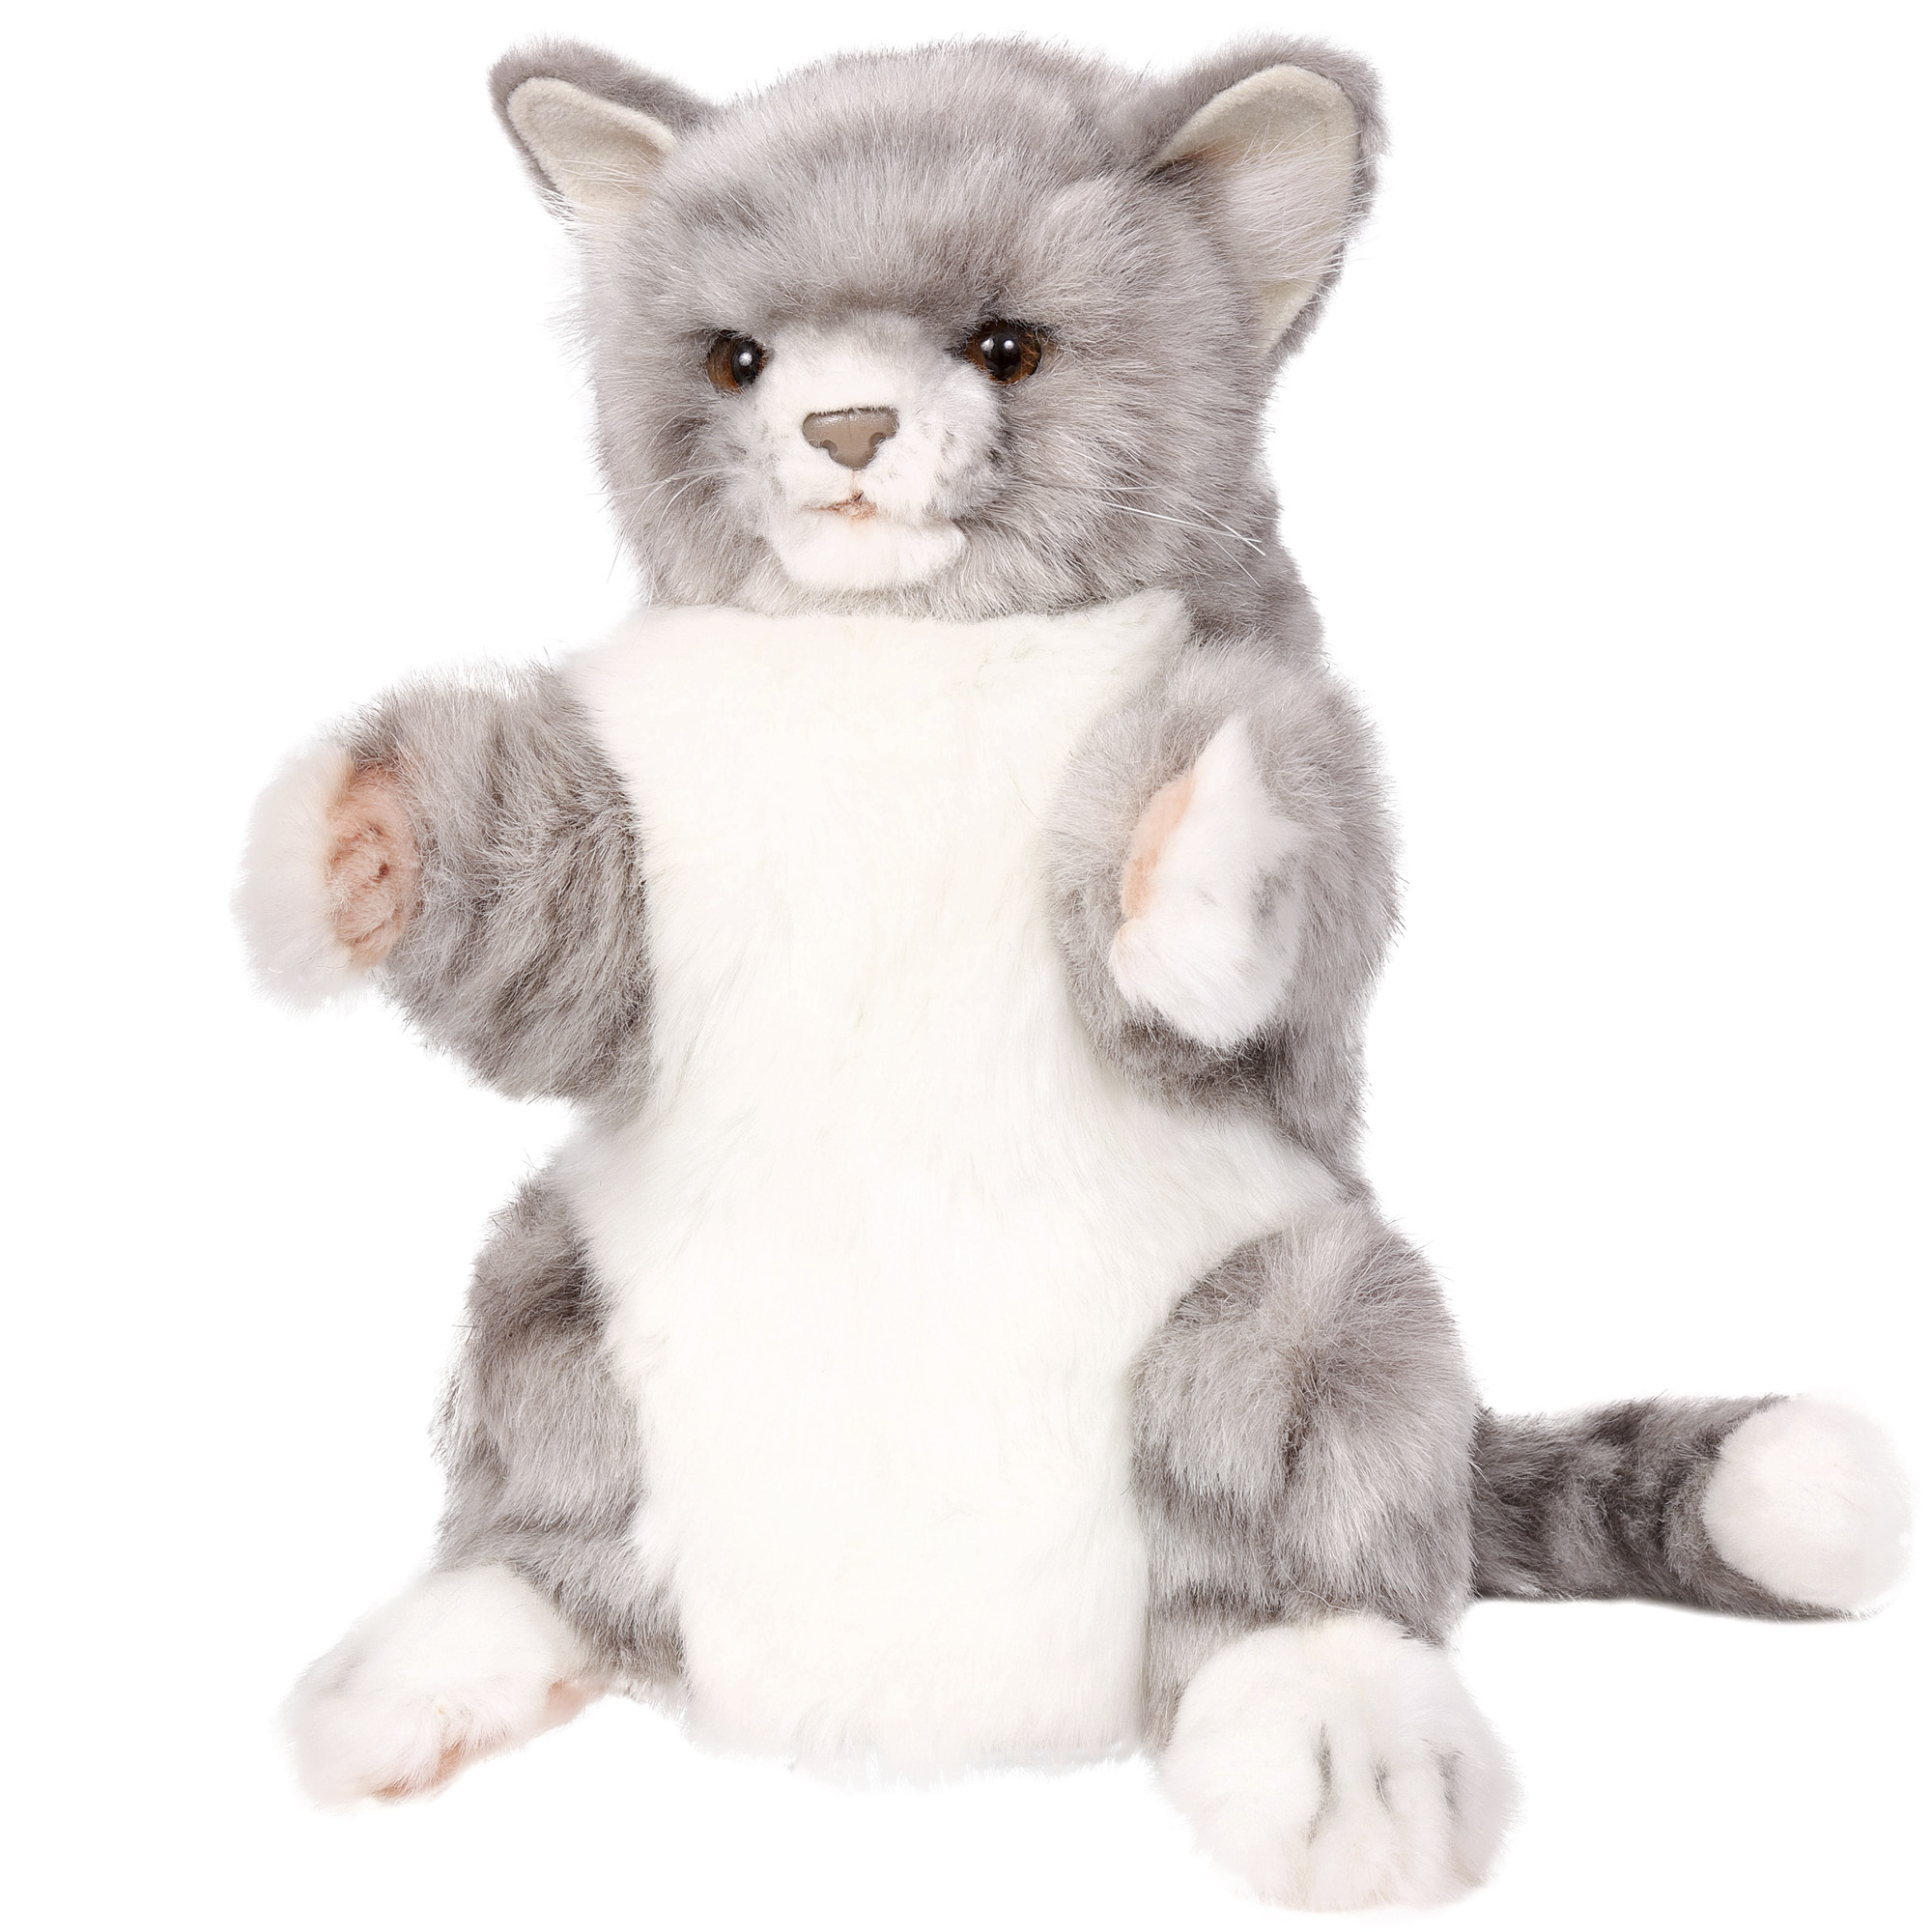 Реалистичная мягкая игрушка HANSA Кошка игрушка на руку 30 см - фото 3